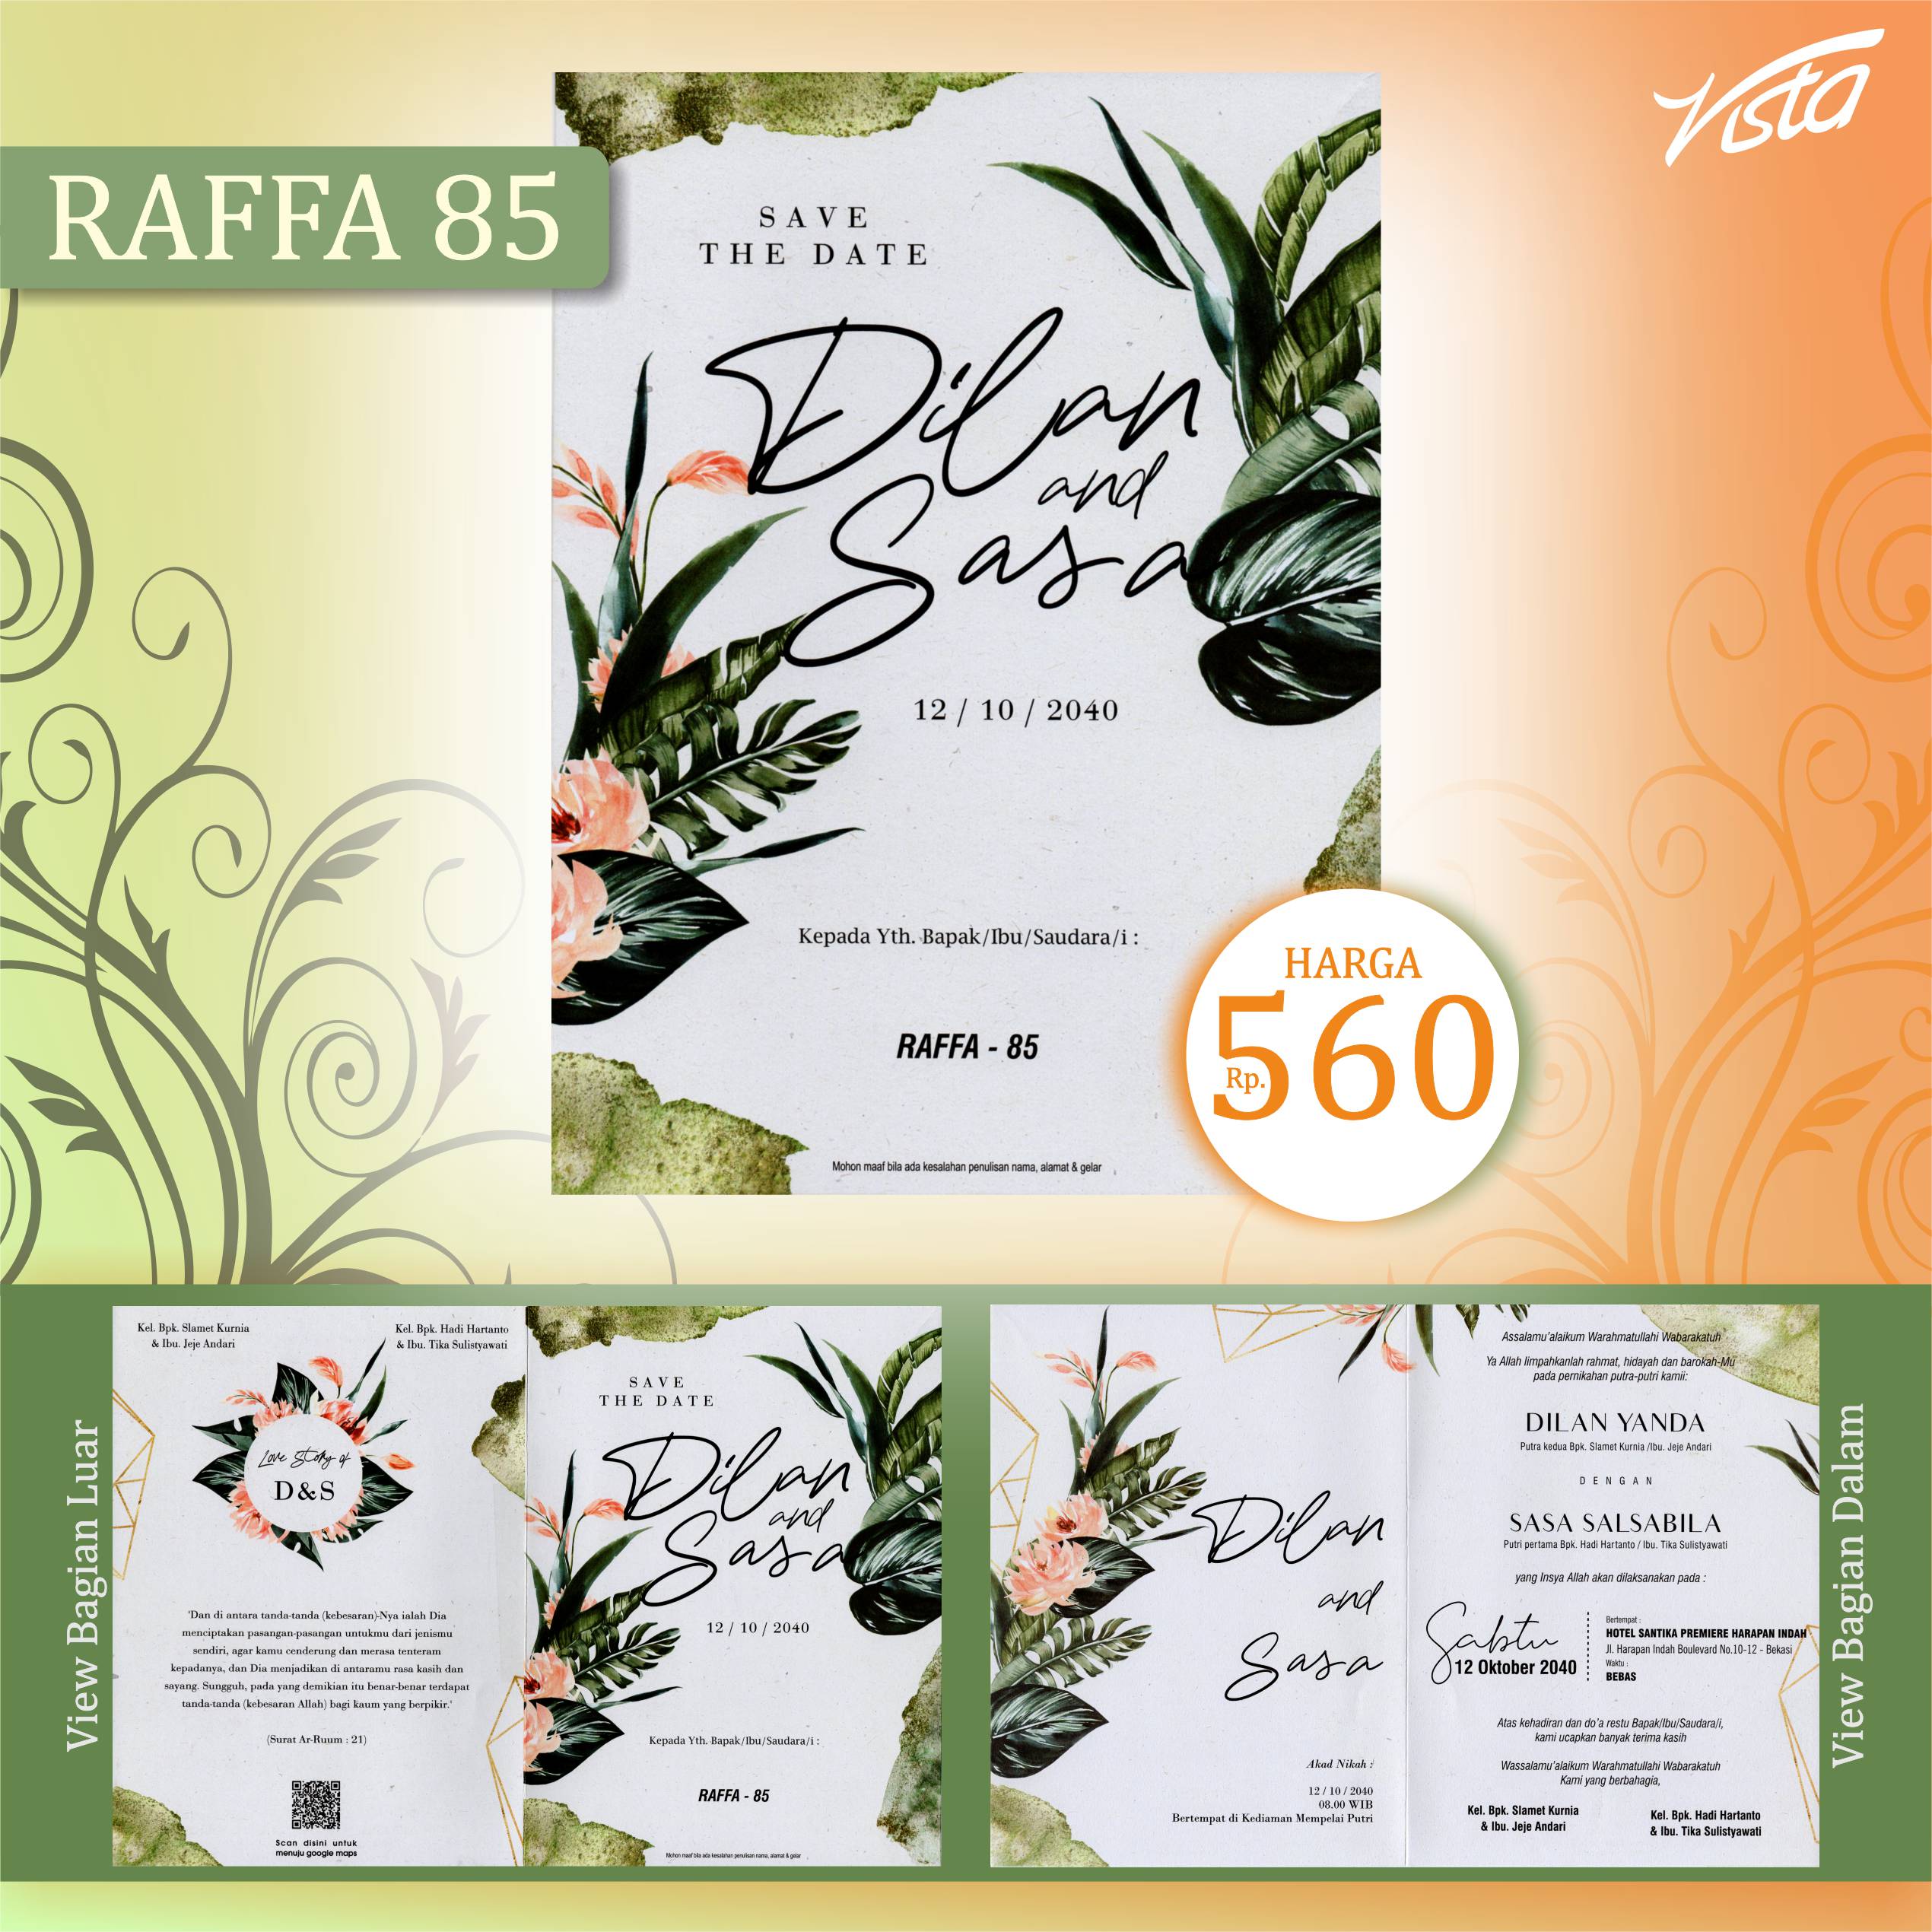 Raffa 85 